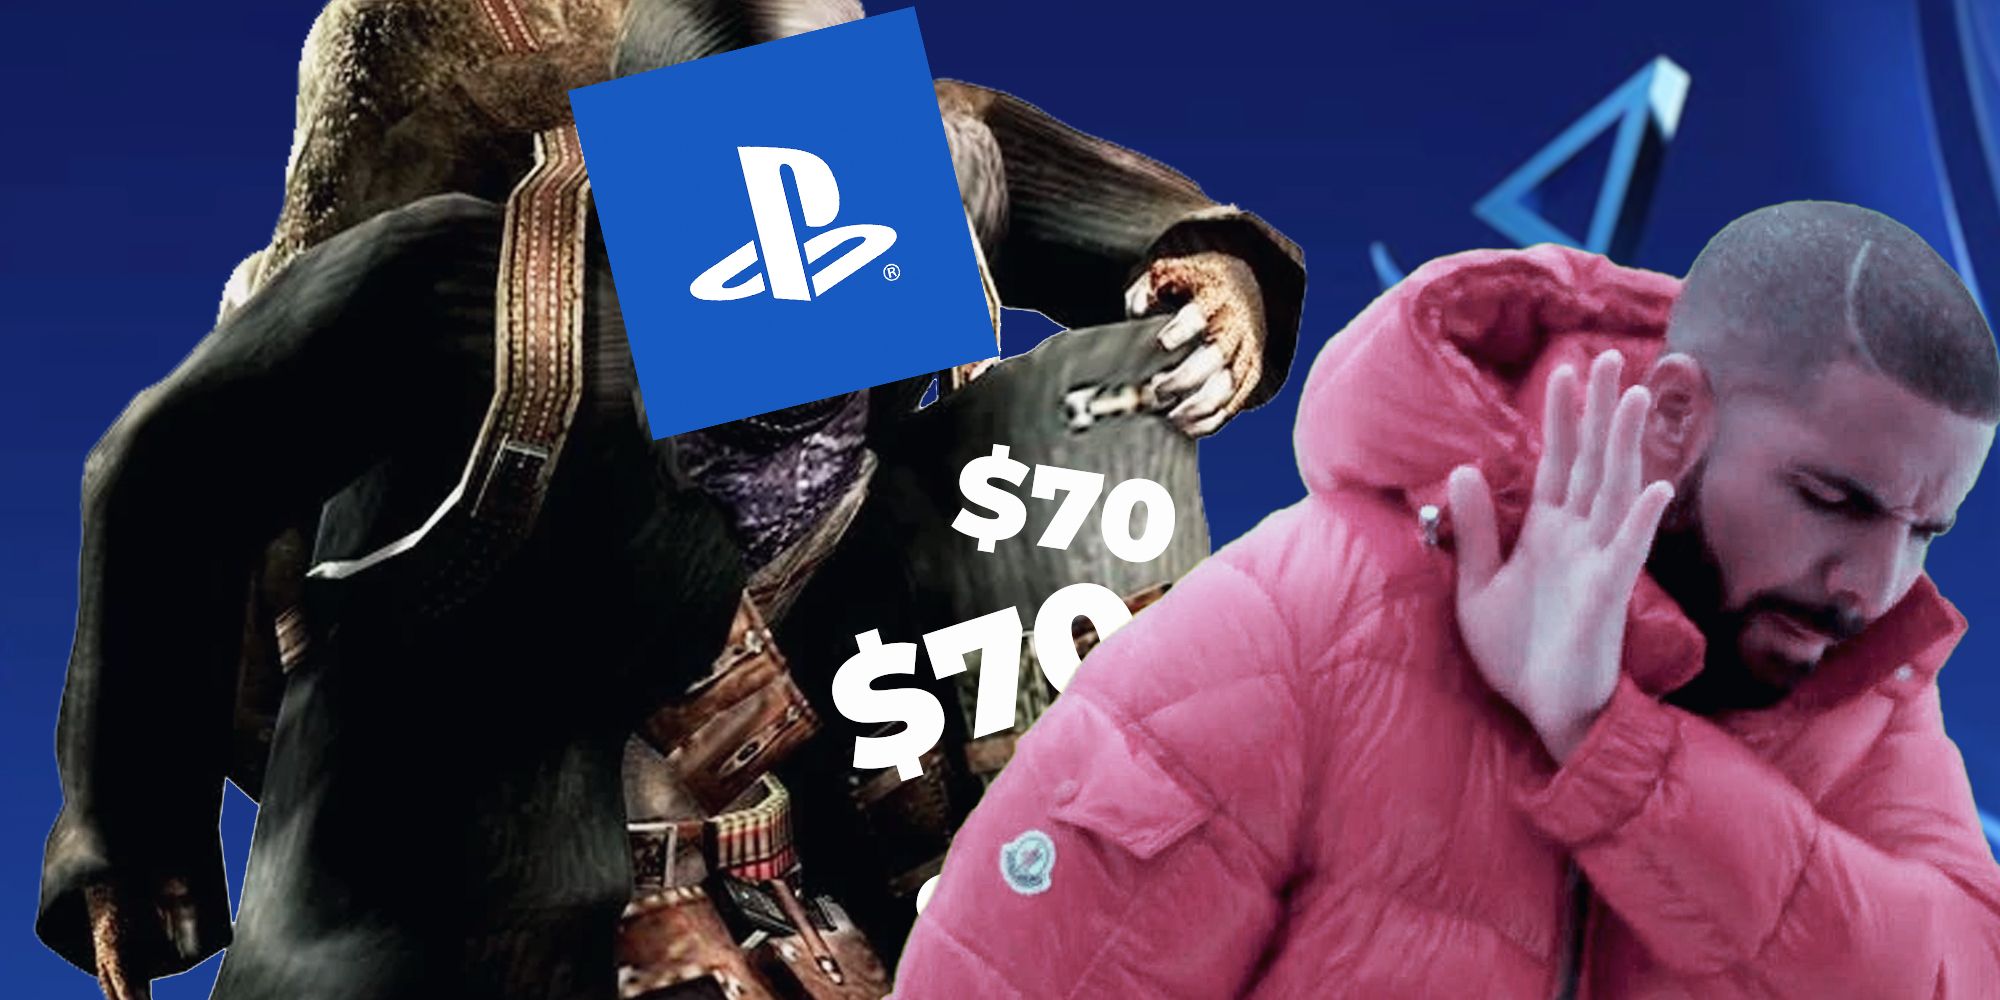 PlayStation $70 games showing an image of Drake pushing away the big price 